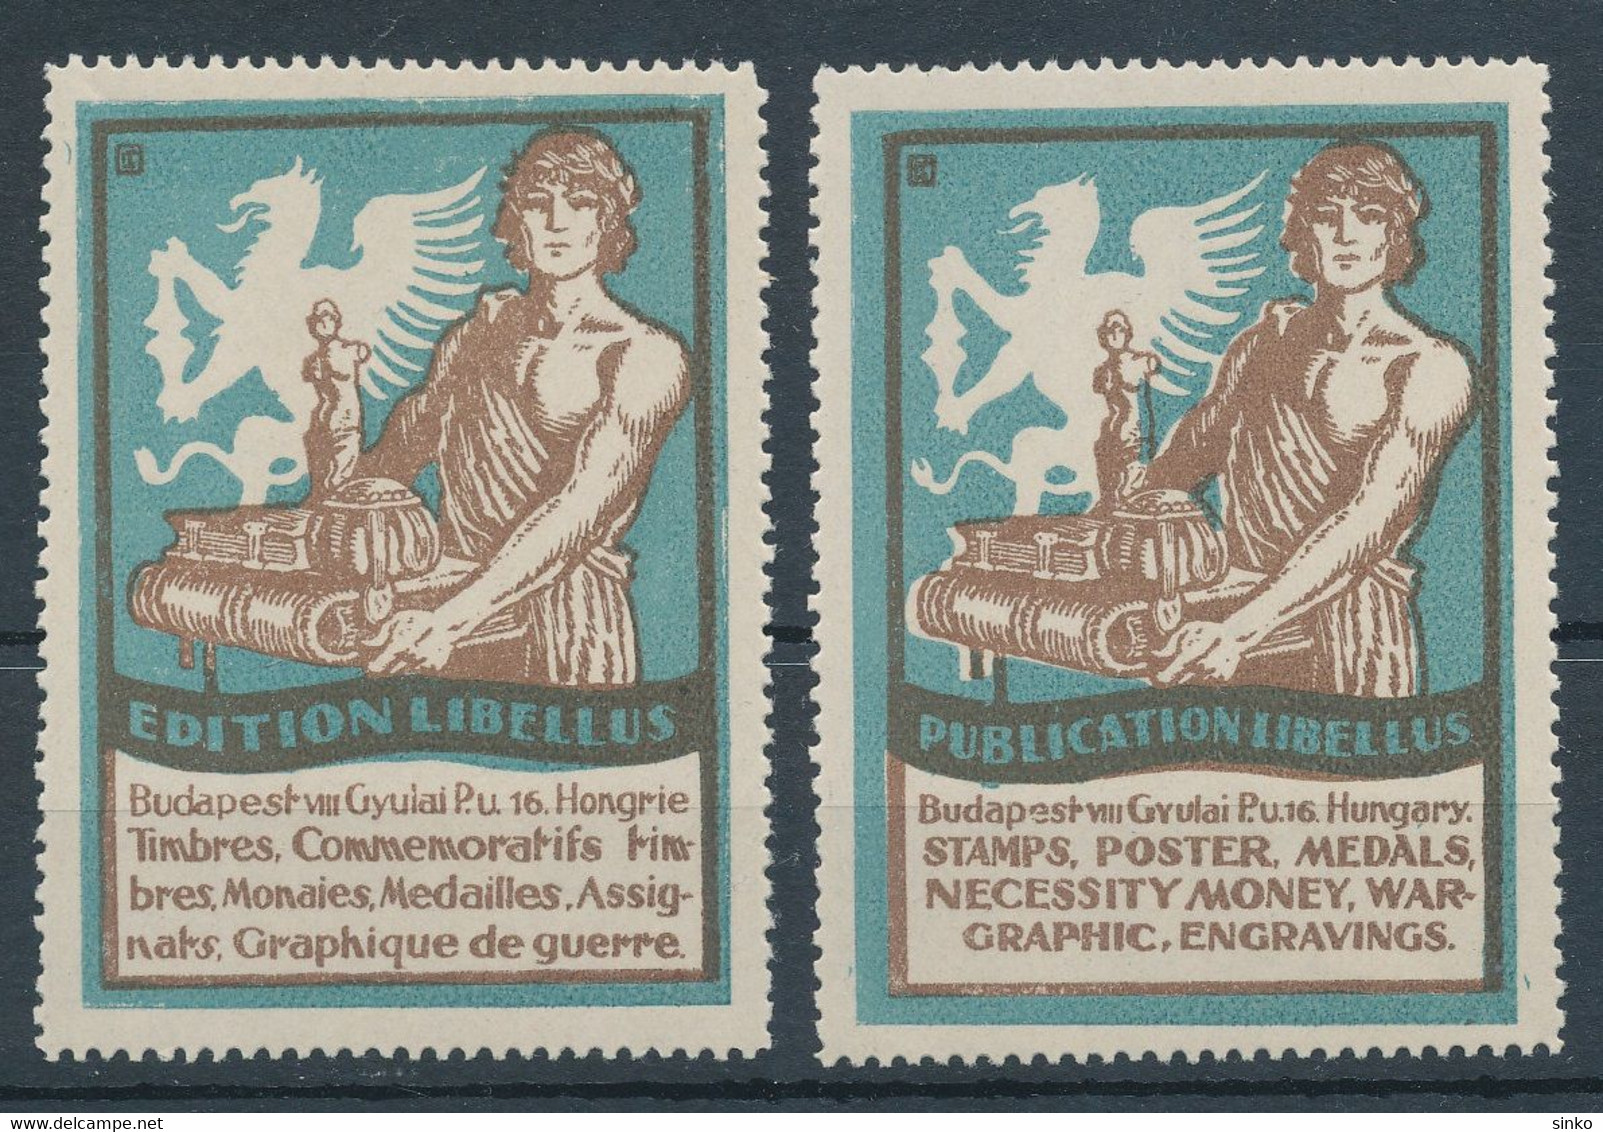 1929. Publication Libellus Advertisement Cinderella - Commemorative Sheets